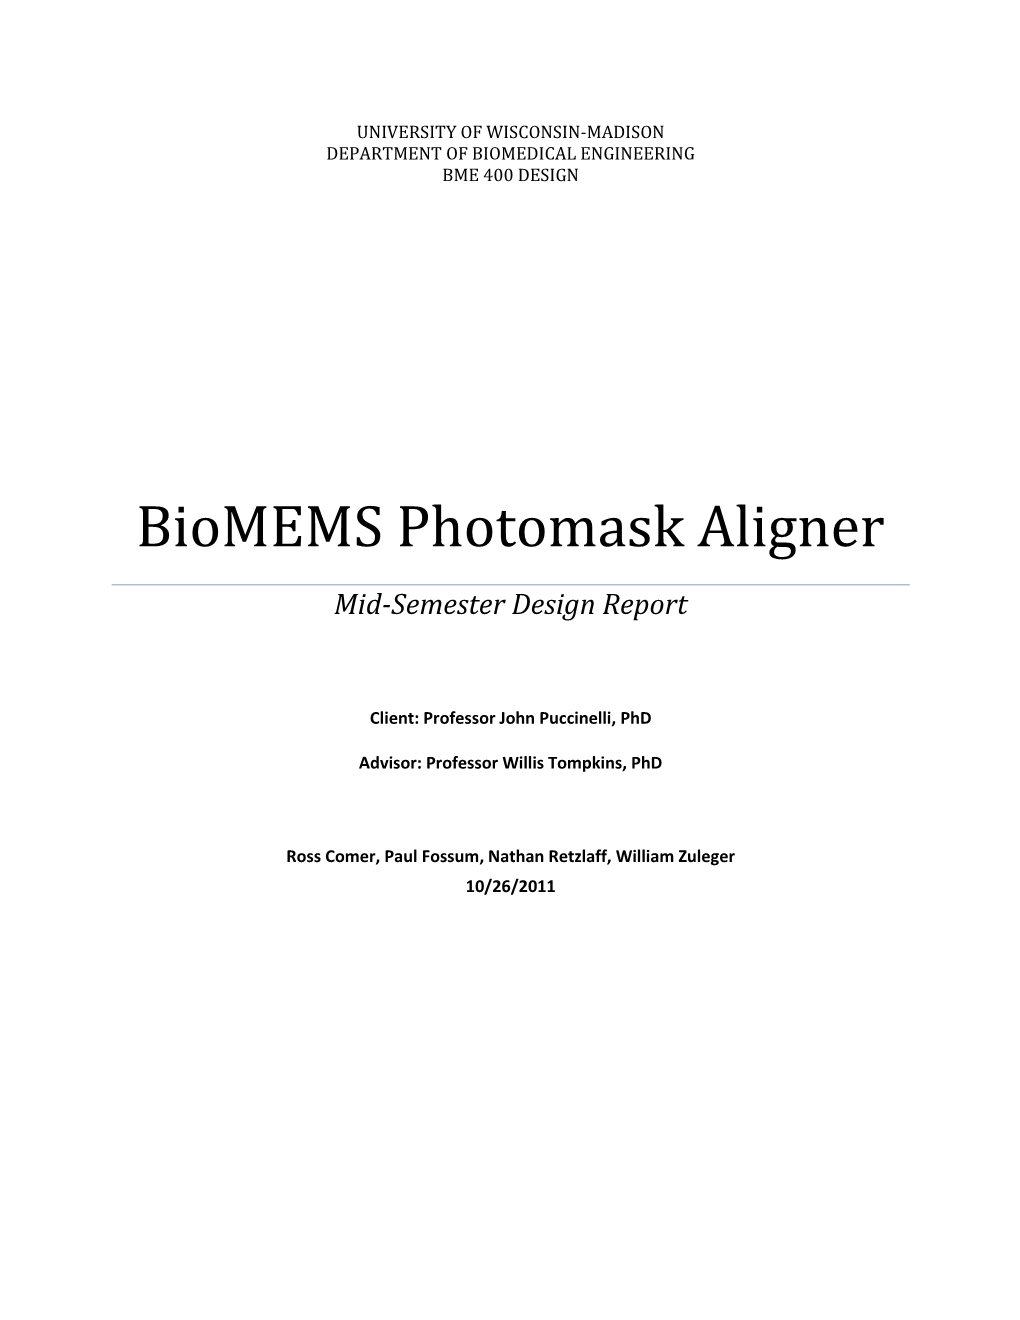 Biomems Photomask Aligner Mid-Semester Design Report